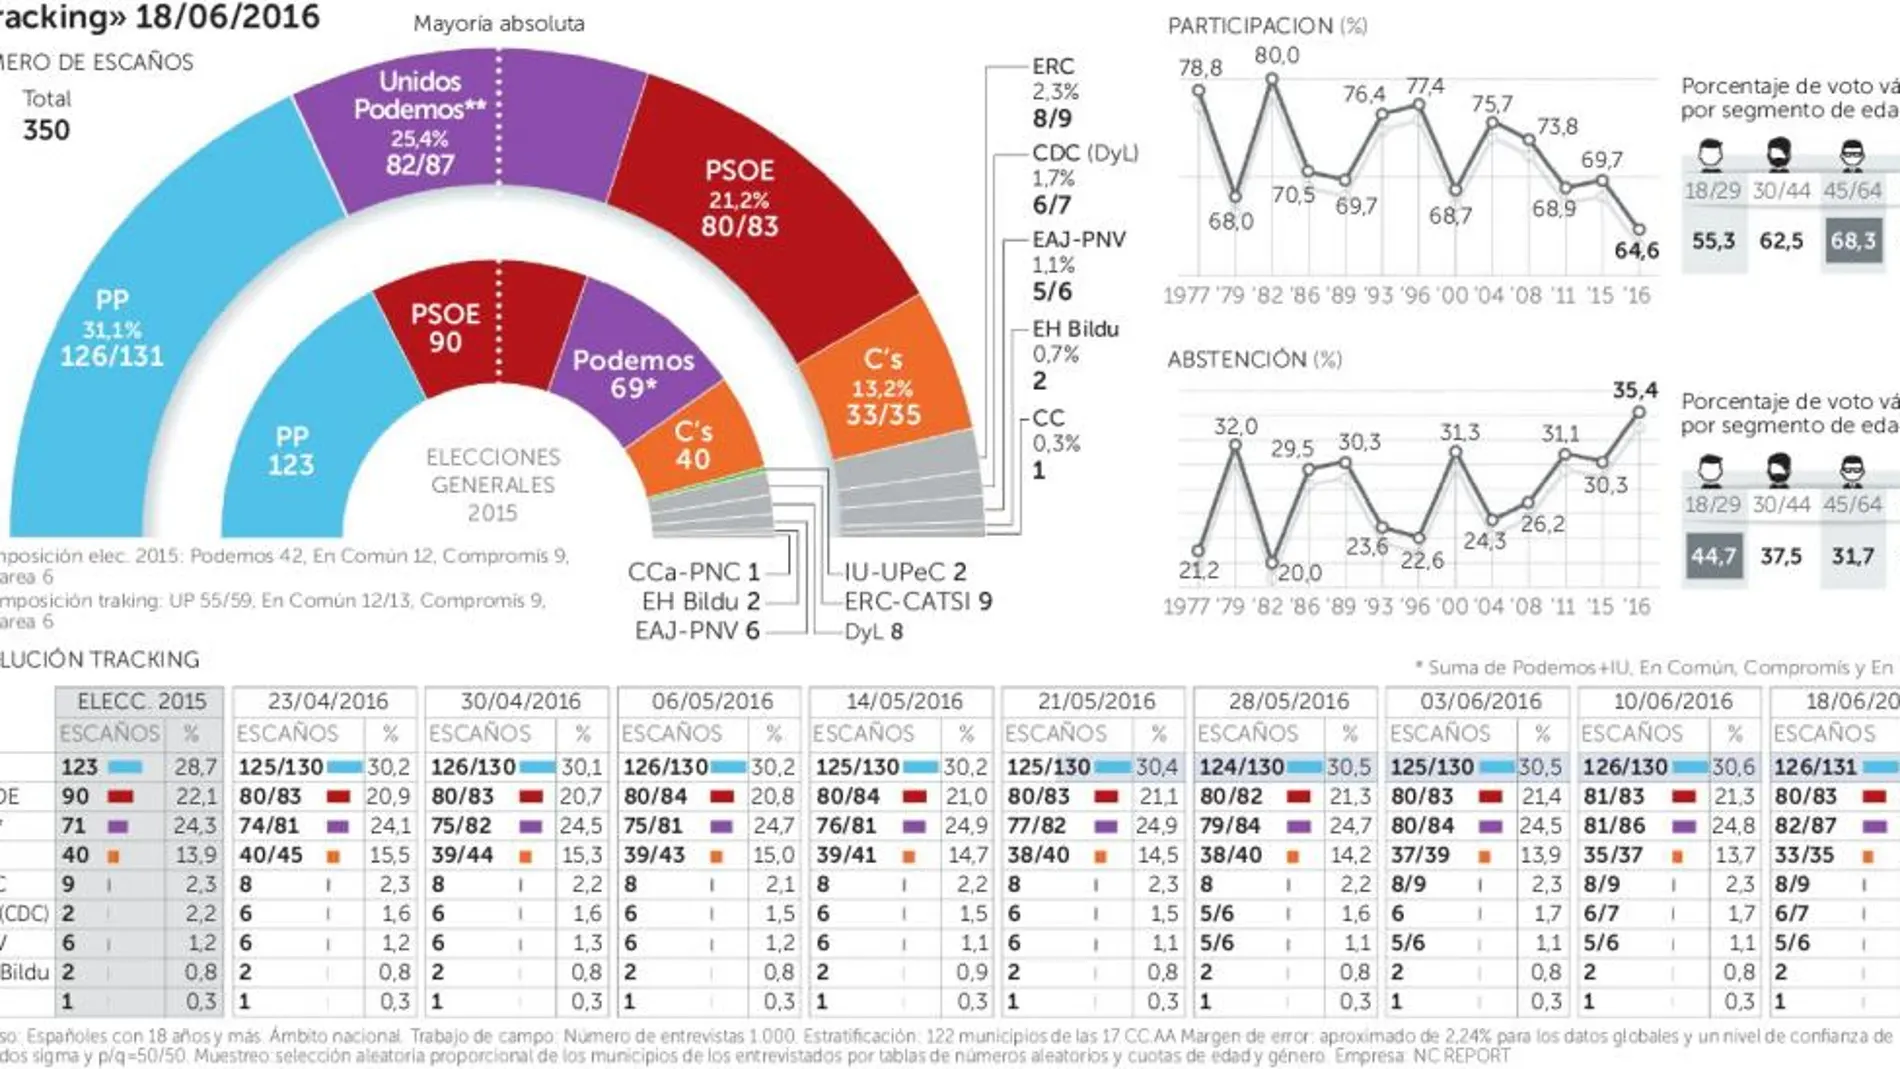 El PP rompe la barrera del 31% y Podemos es ya la única alternativa